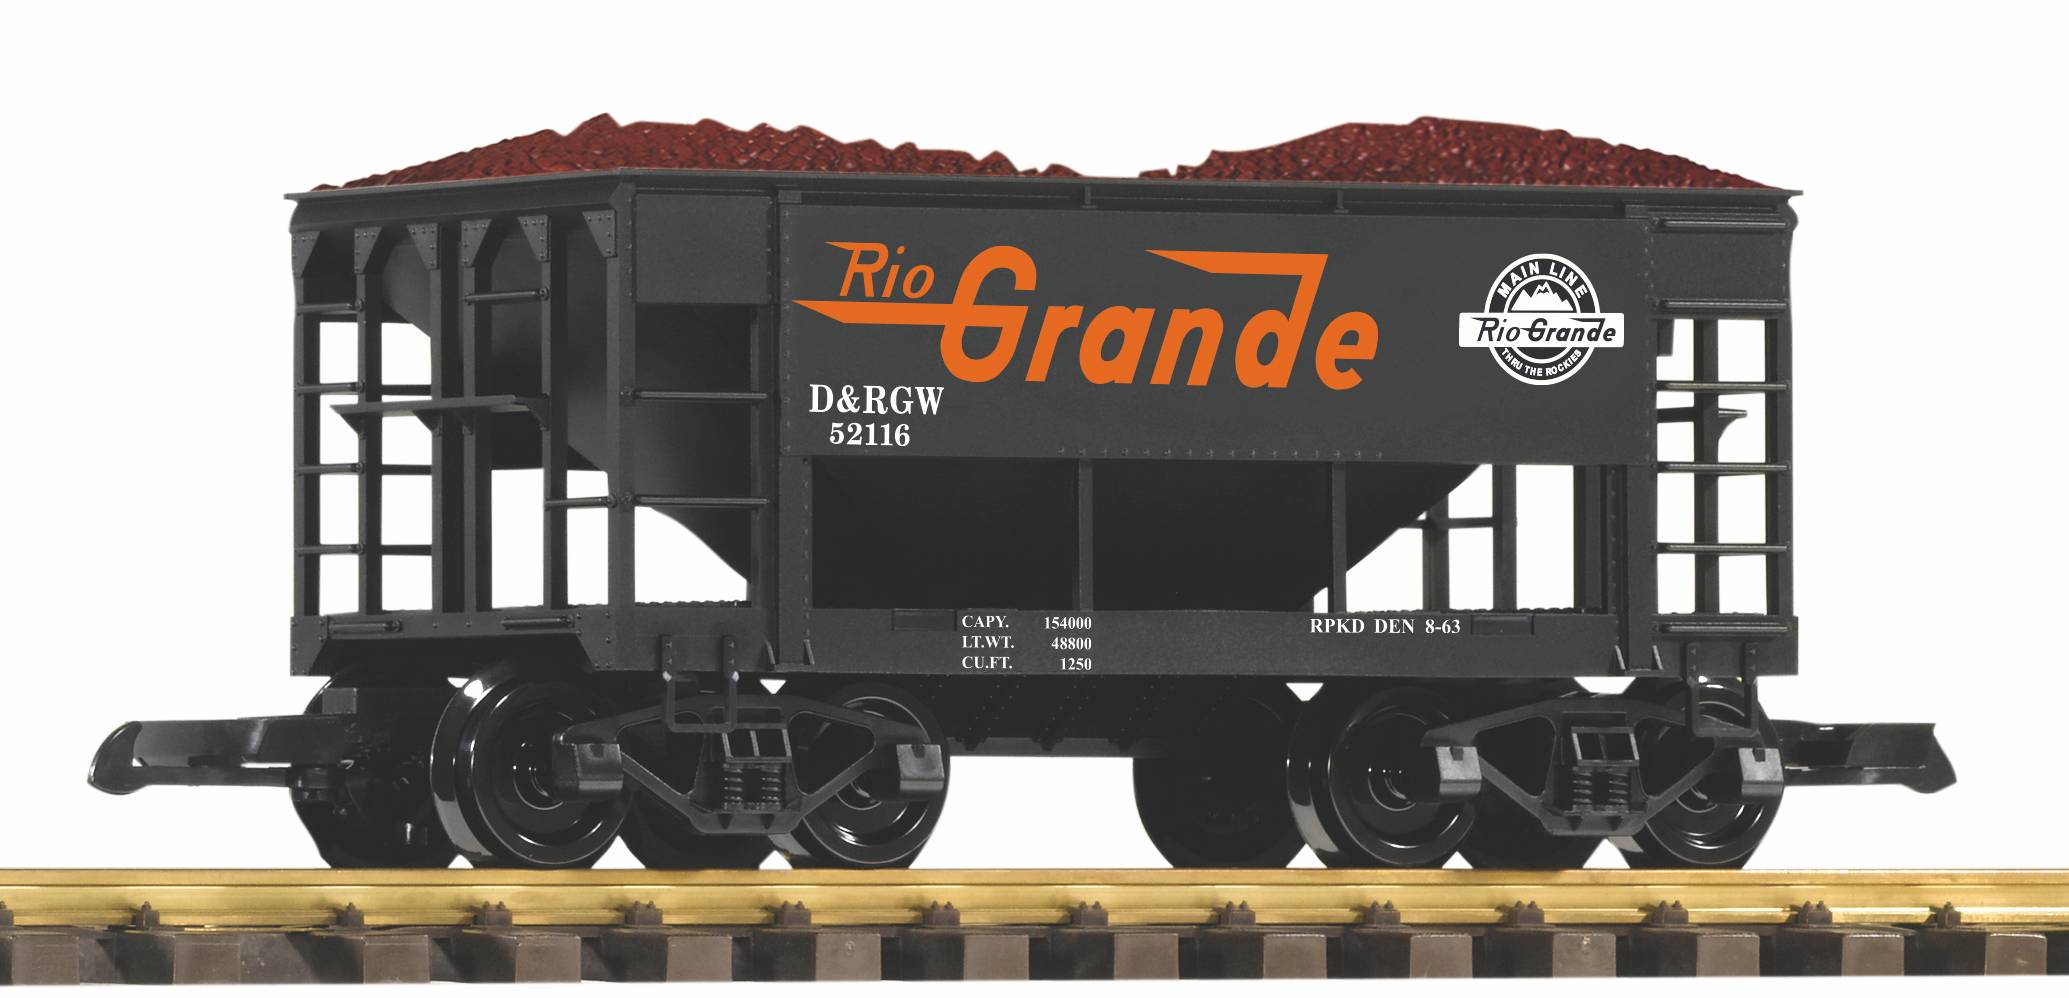 PIKO Art. Nr. 38912 -Druckvariante des Schüttgutwagens (Ore Car) im Design der US Bahngesellschaft Rio Grande, D&RGW 52116, mit Erzladung.  